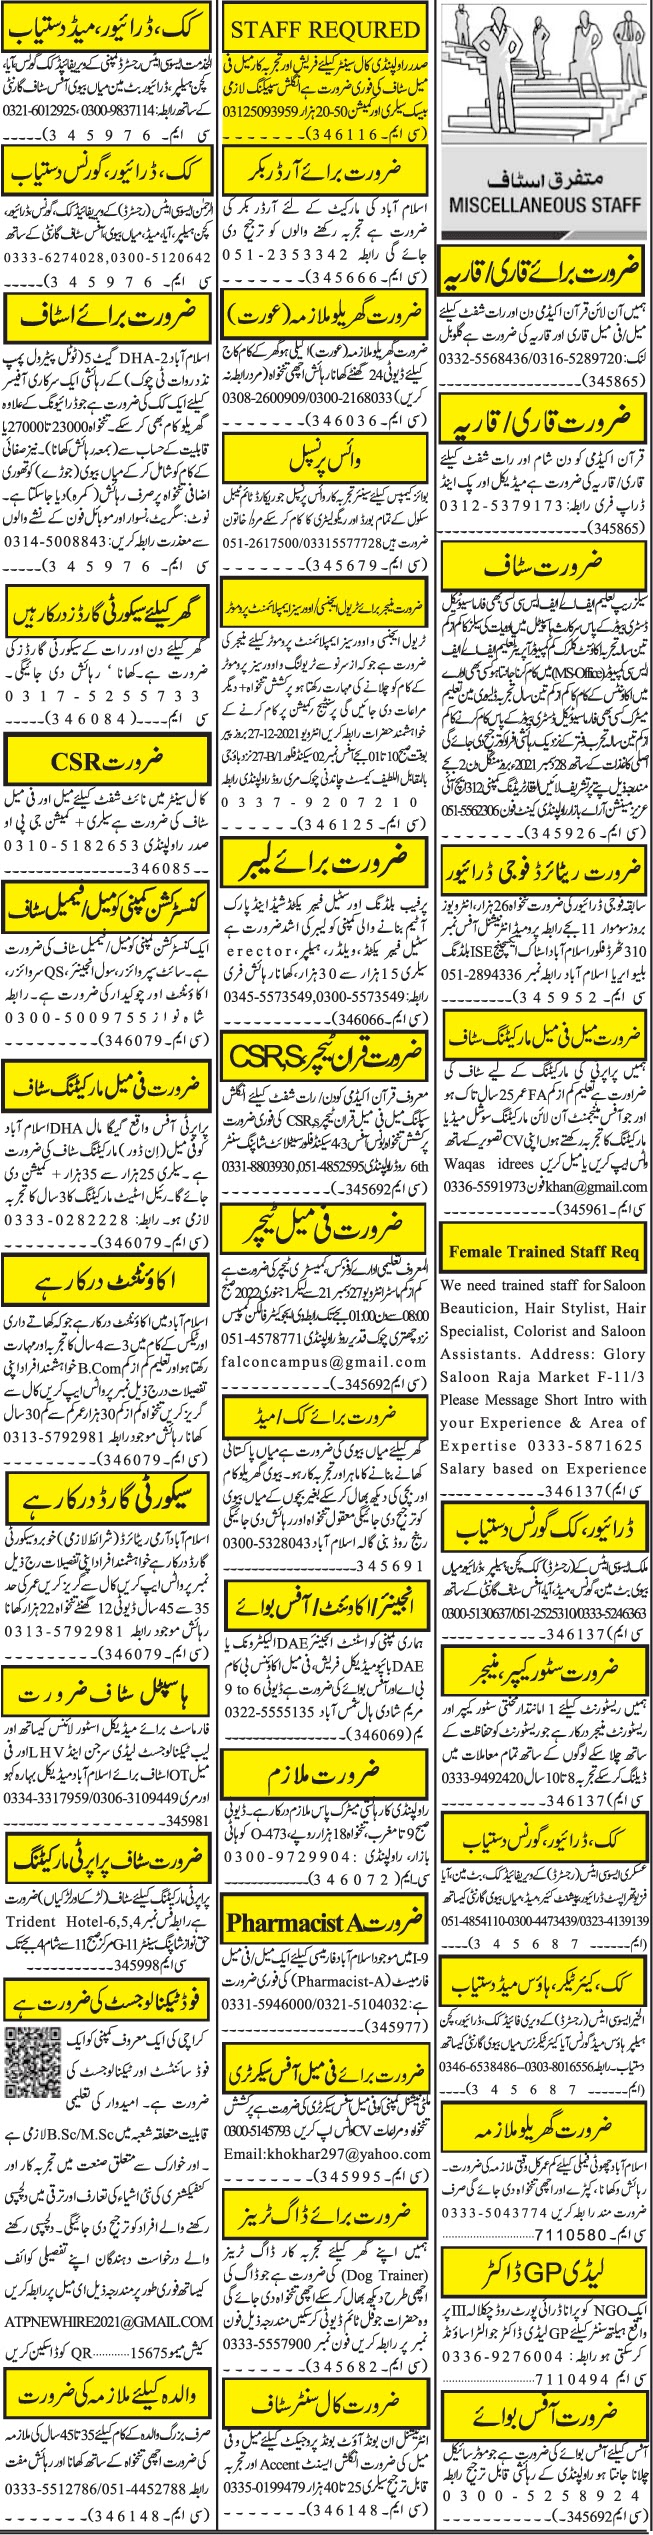 Latest Jobs in Pakistan 2022- Jobspk14.com